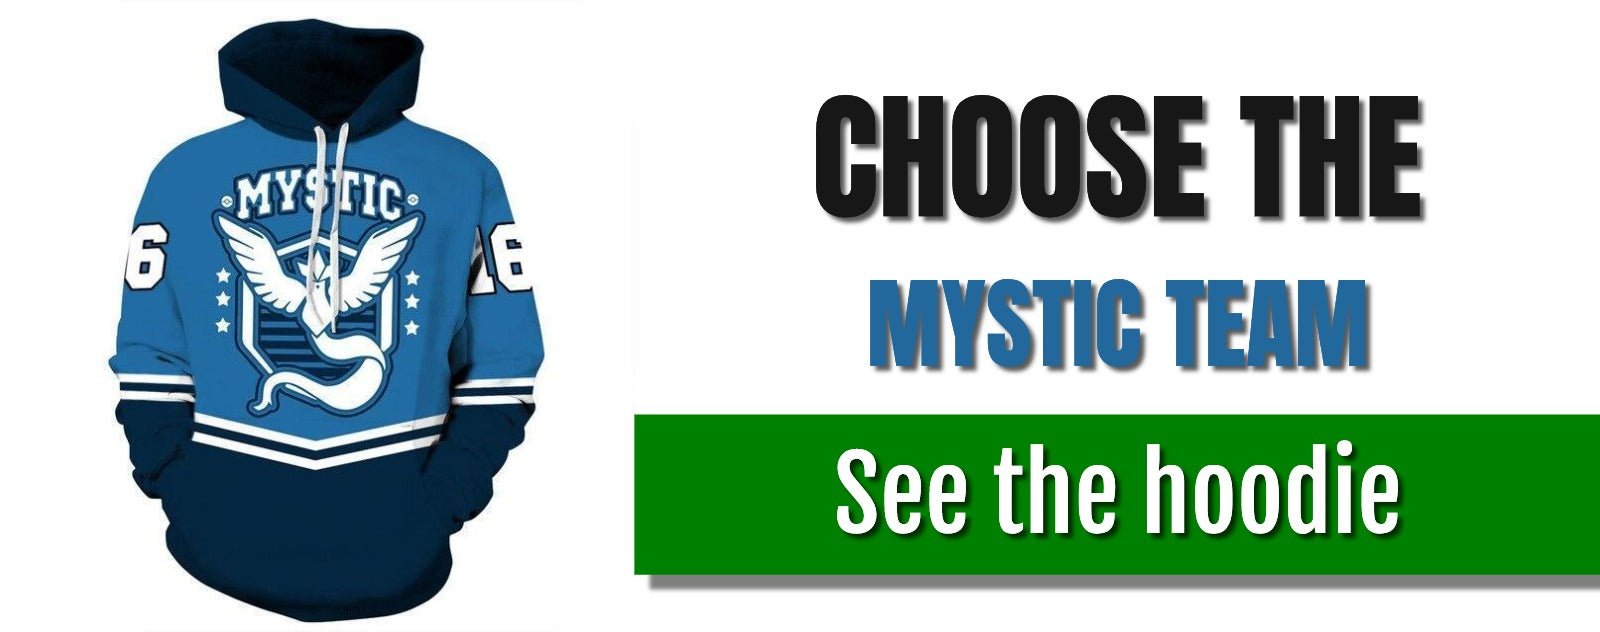 mystic-team-hoodie